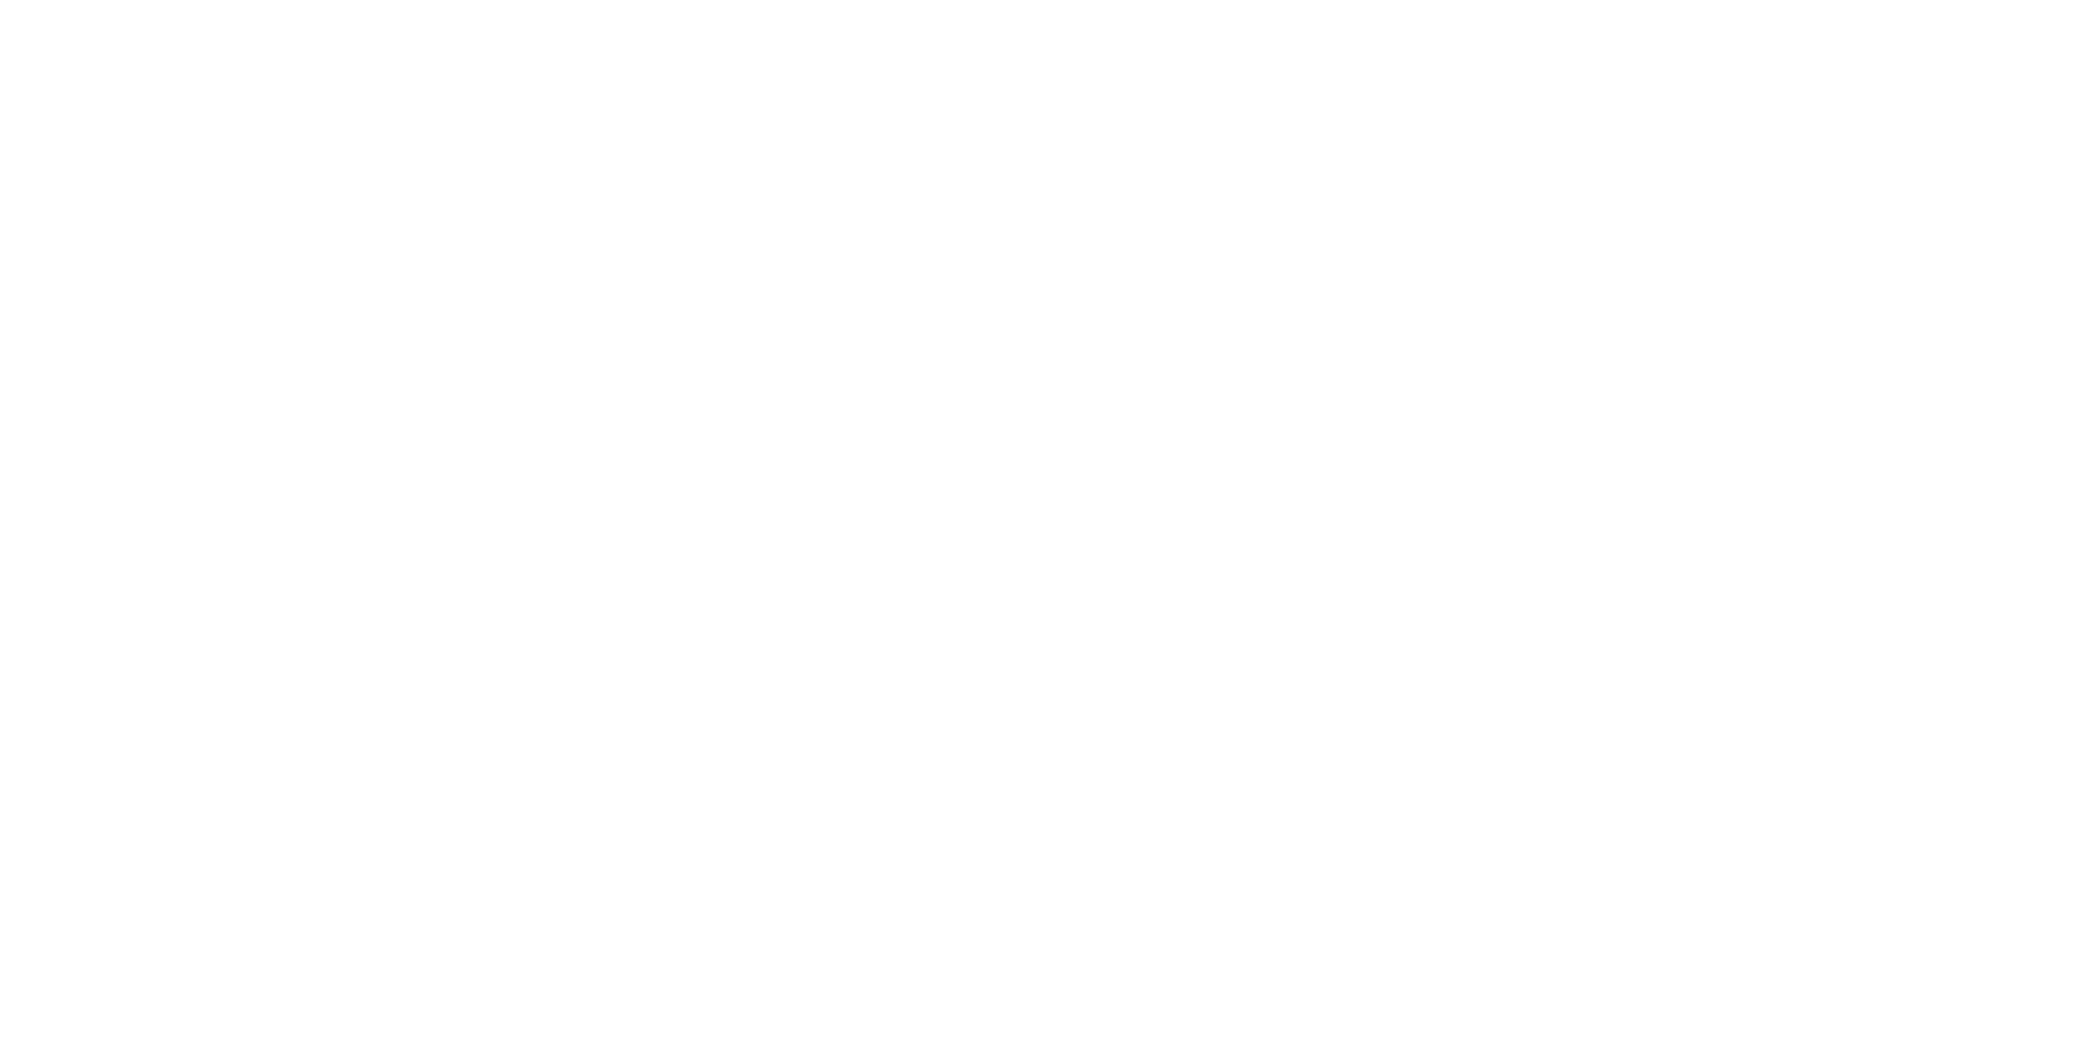 Larsen Photo Co. primary logo